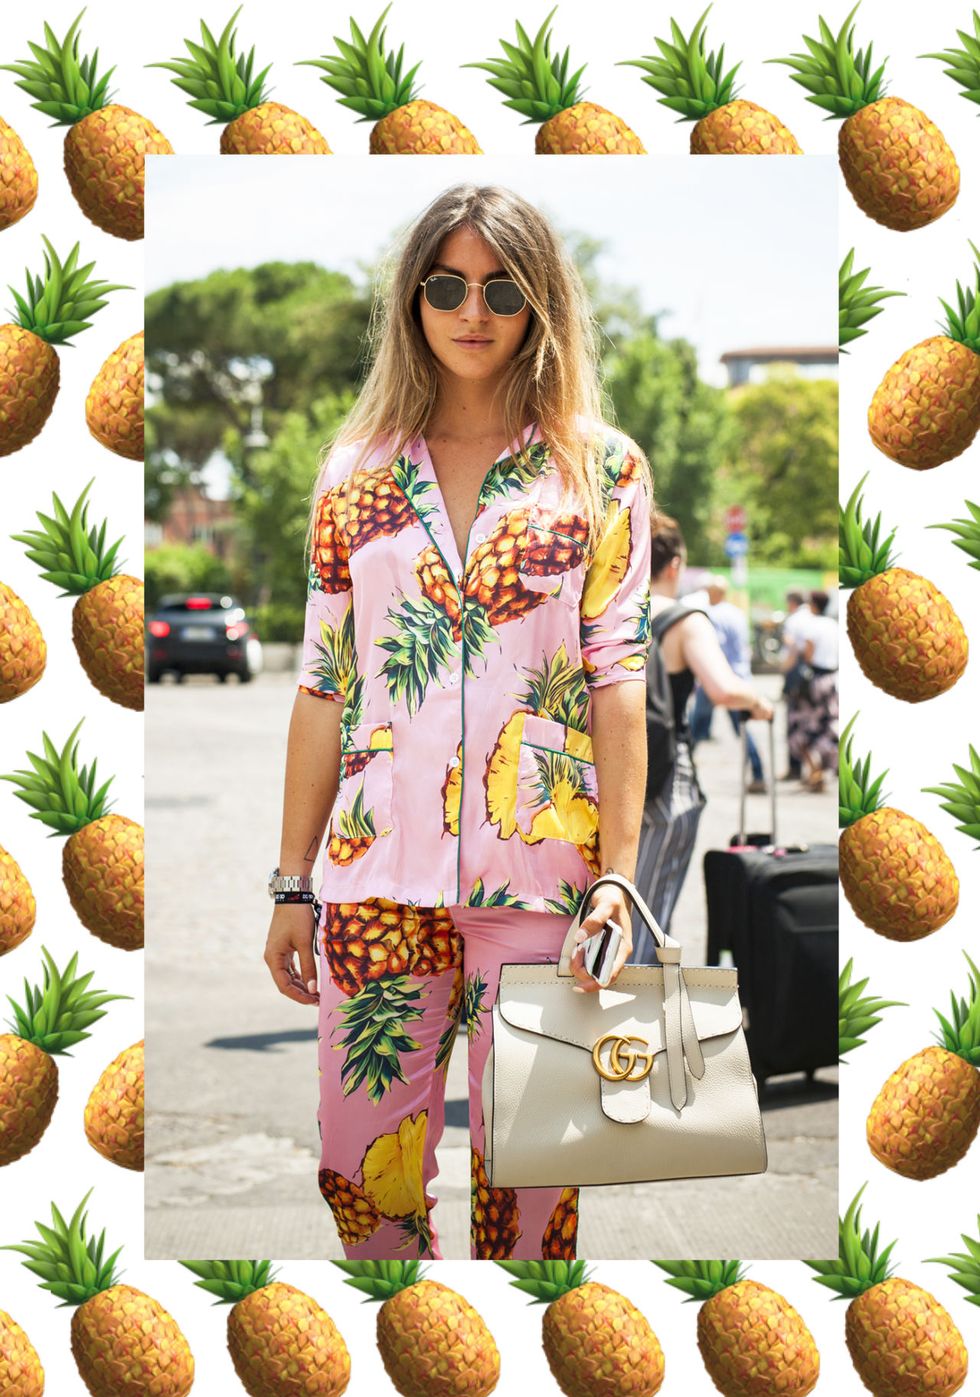 Gli emoji con la frutta più cliccati sono l'ispirazione moda per gli outfit più succosi e appetitosi dell'estate 2017: gli accessori giusti per vestirti al gusto di anguria, pesca ananas e avocado.